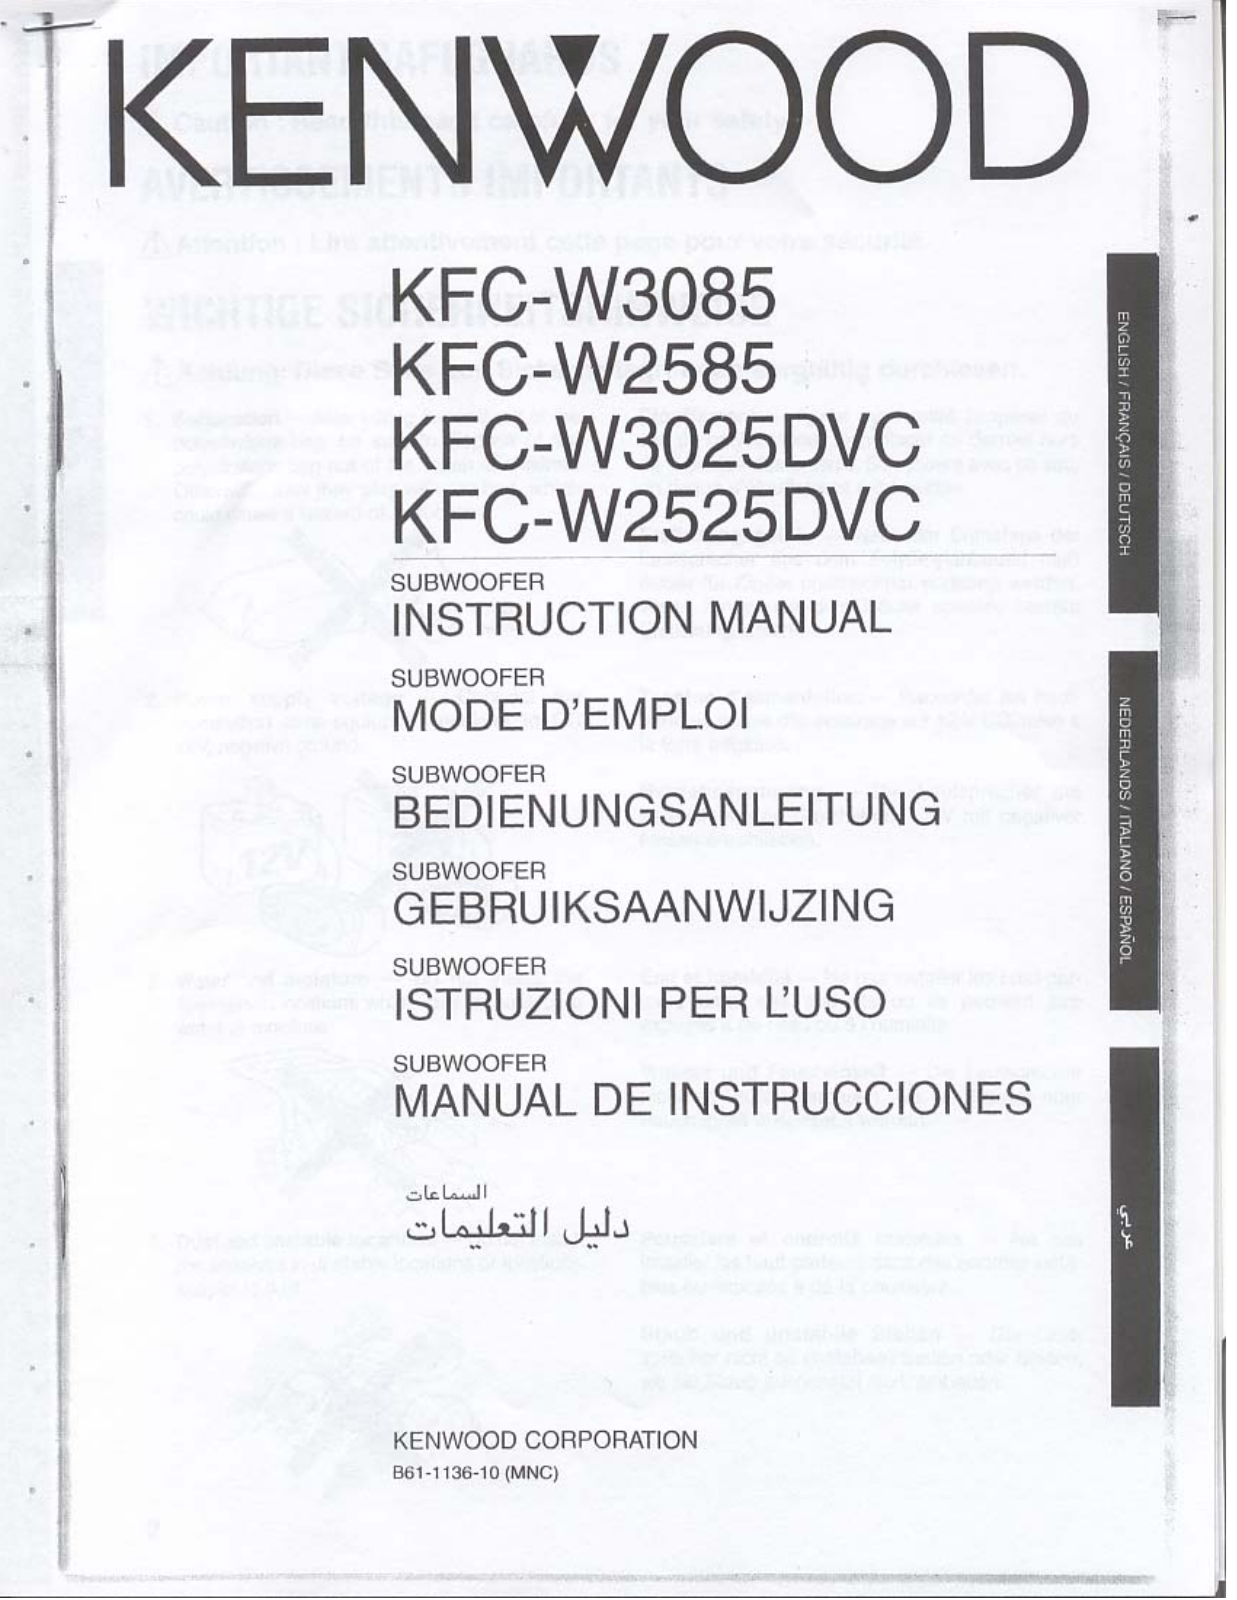 Kenwood KFC-W3025DVC, KFC-W3085, KFC-W2525DVC, KFC-W2585 Owner's Manual